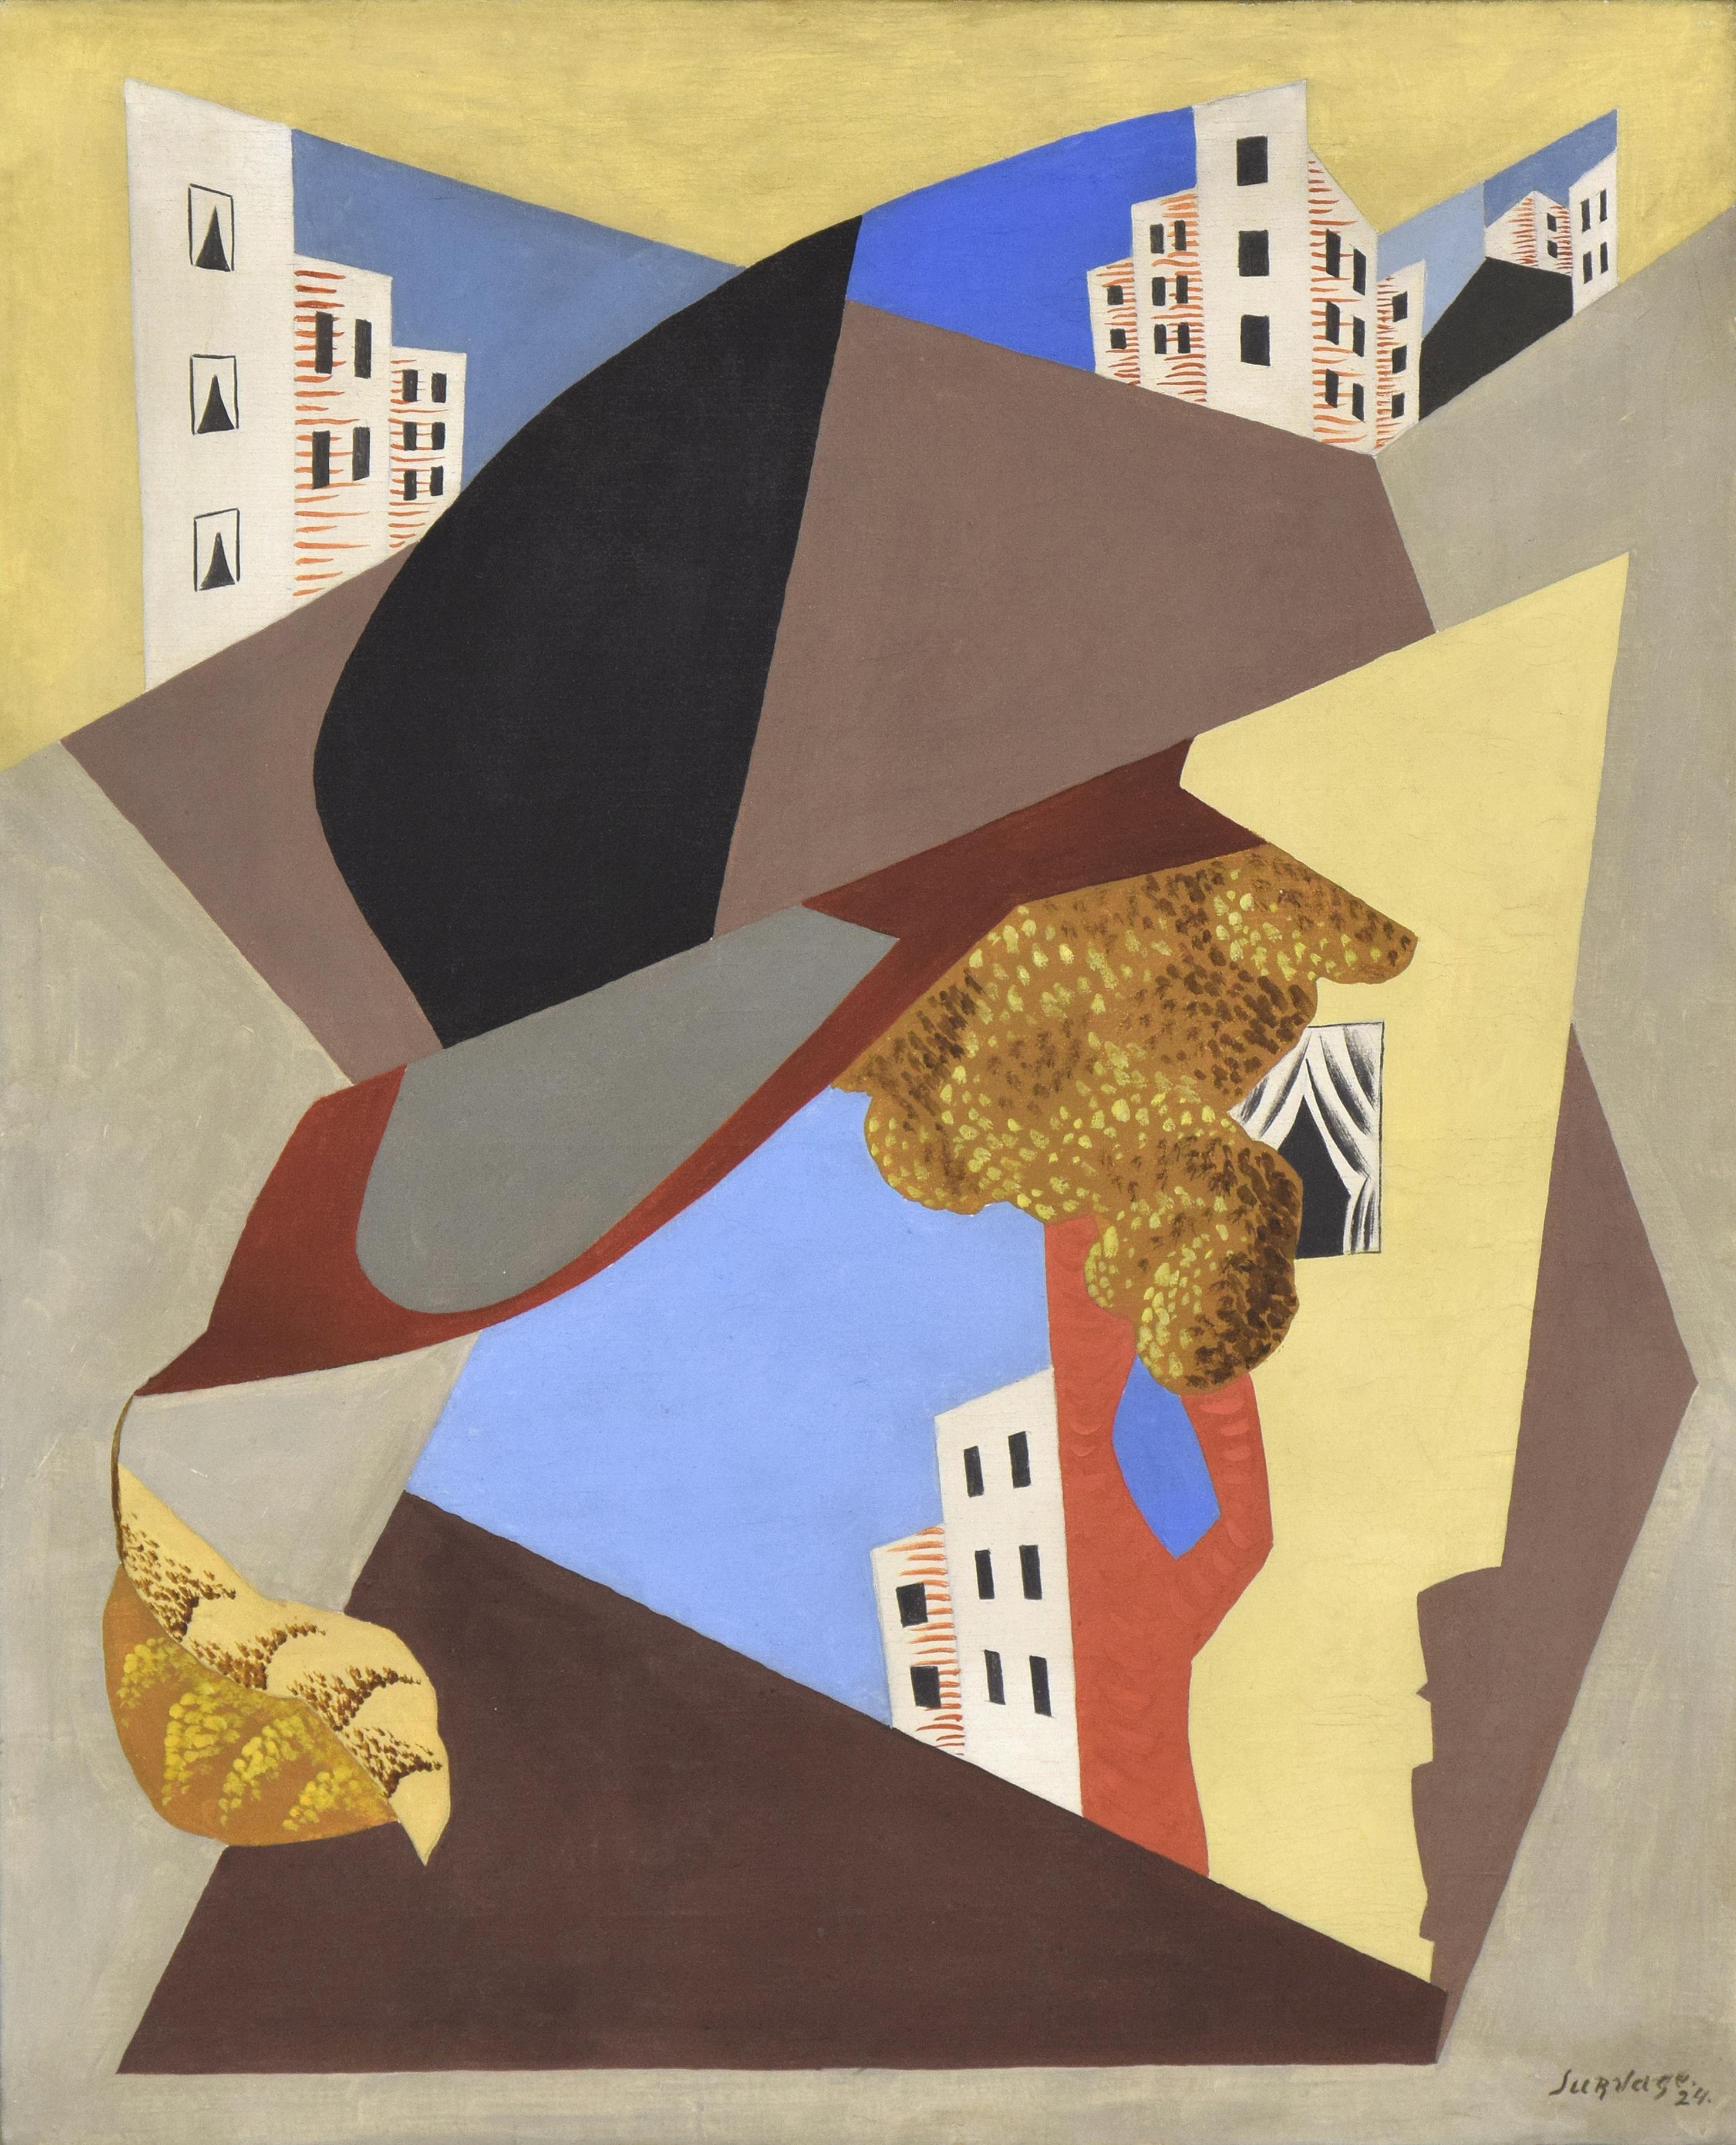 Léopold Survage Abstract Painting – Ville von LÉOPOLD SURVAGE - Kunst, farbenfrohes kubistisches Ölgemälde eines modernen Meisters